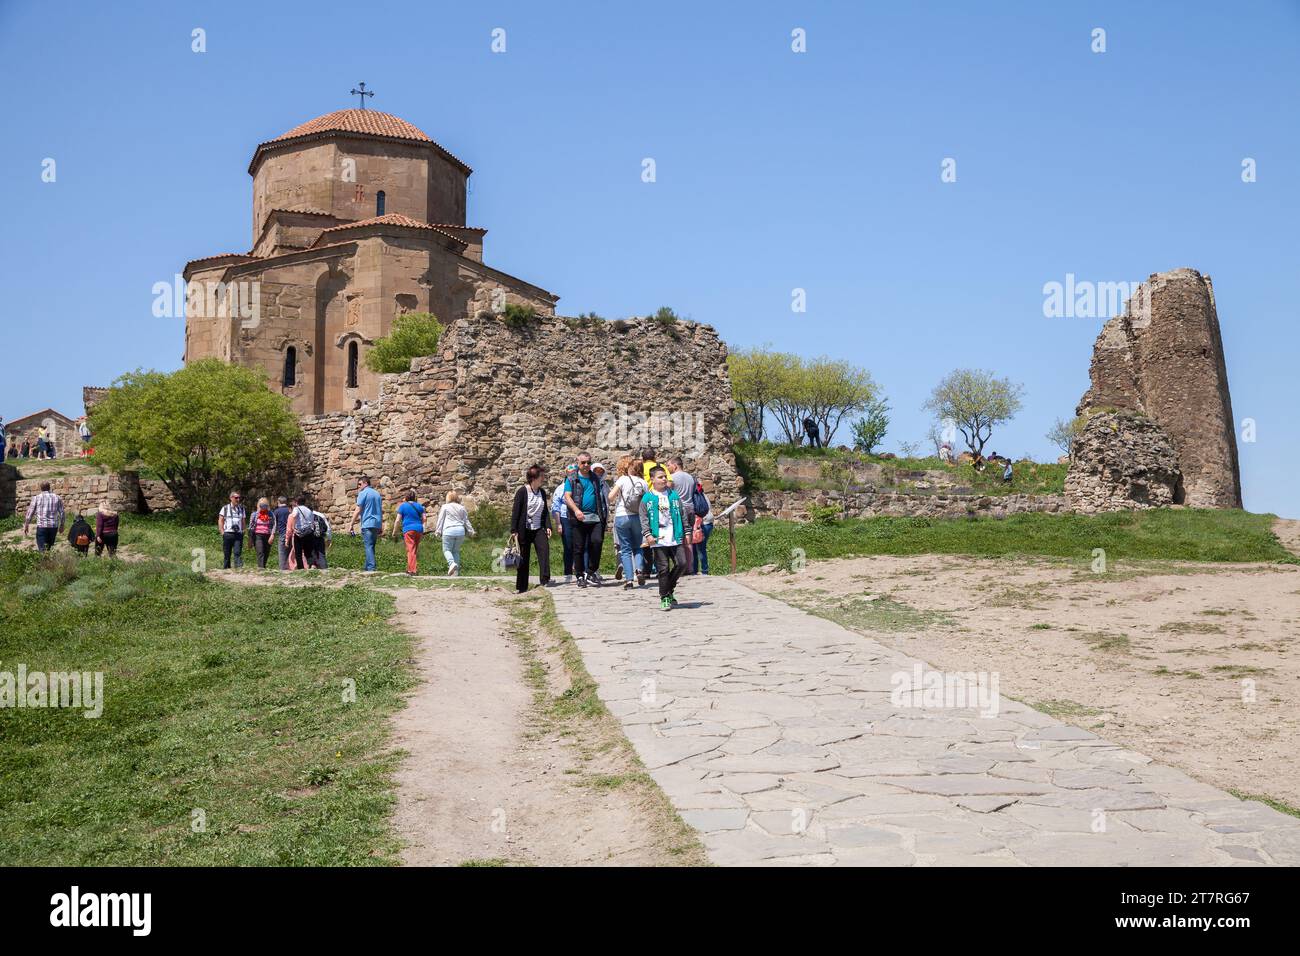 Mtskheta, Georgia - 28 de abril de 2019: Los turistas van al monasterio de Jvari en un día soleado, es un monasterio ortodoxo georgiano del siglo VI Foto de stock